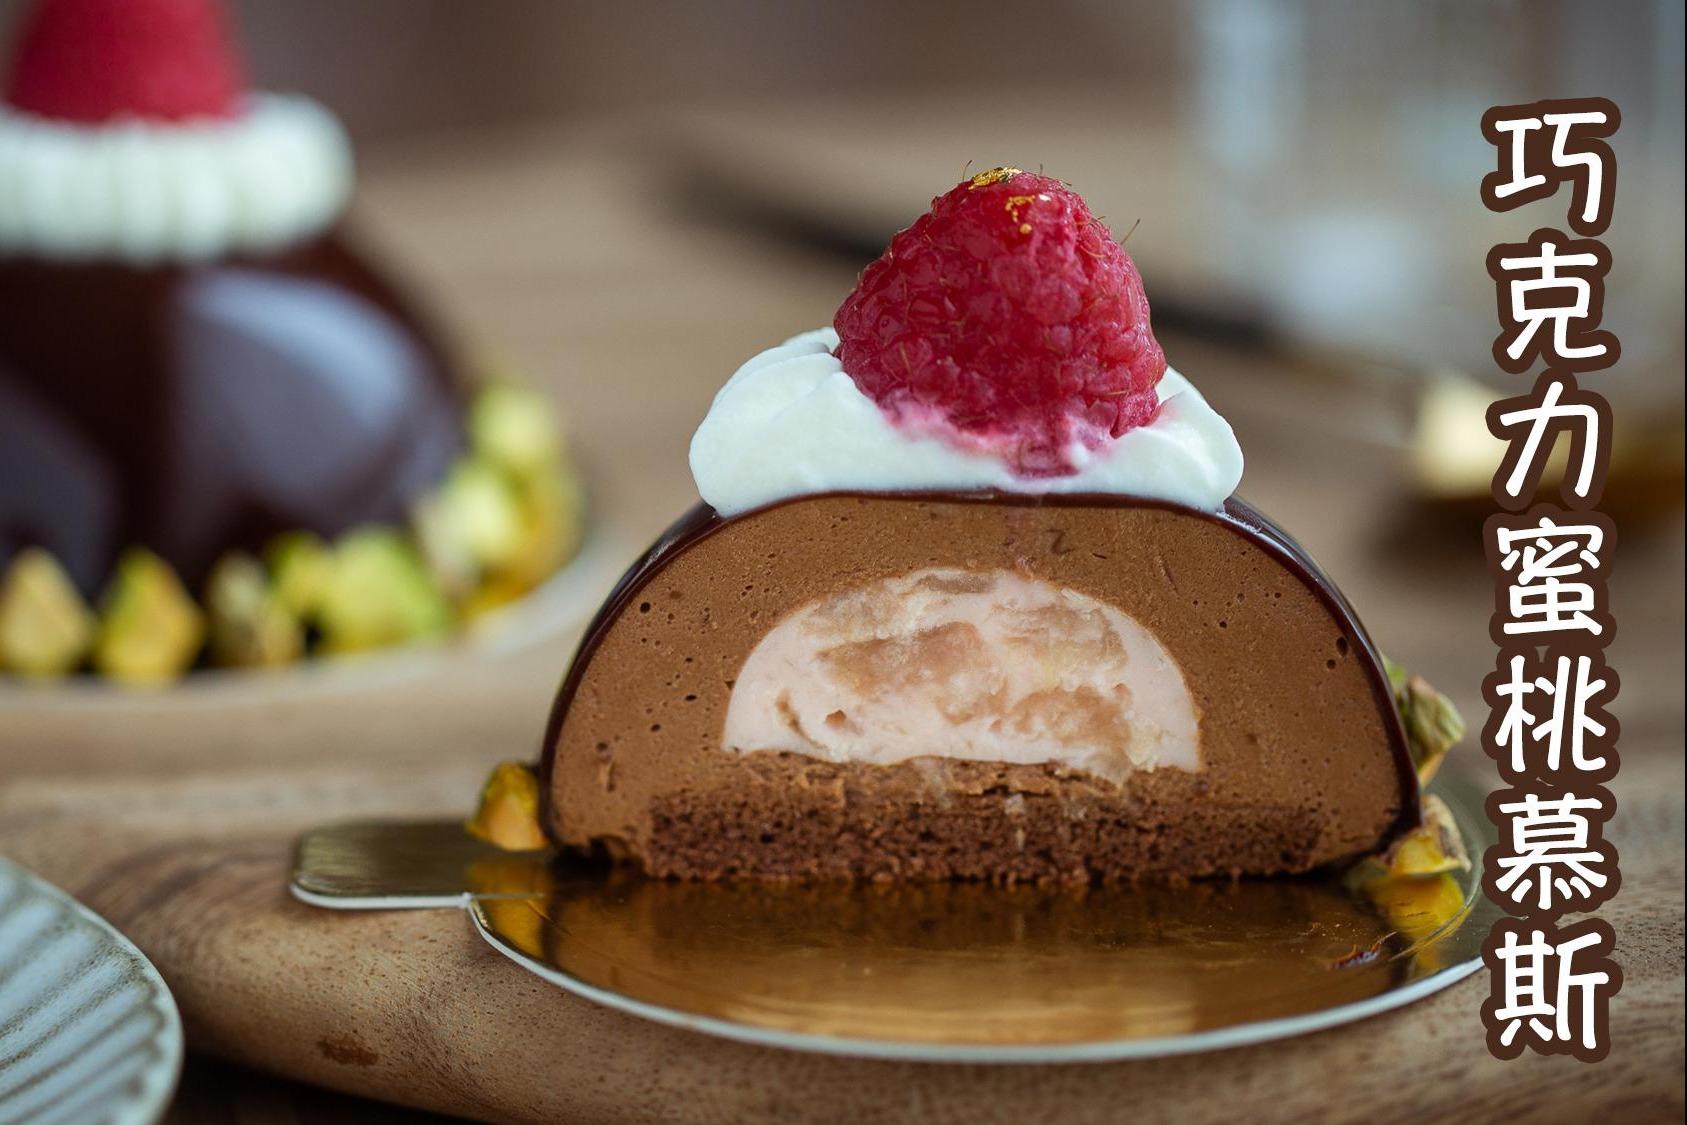 自制高大上法式甜点,多重口感的巧克力蜜桃慕斯